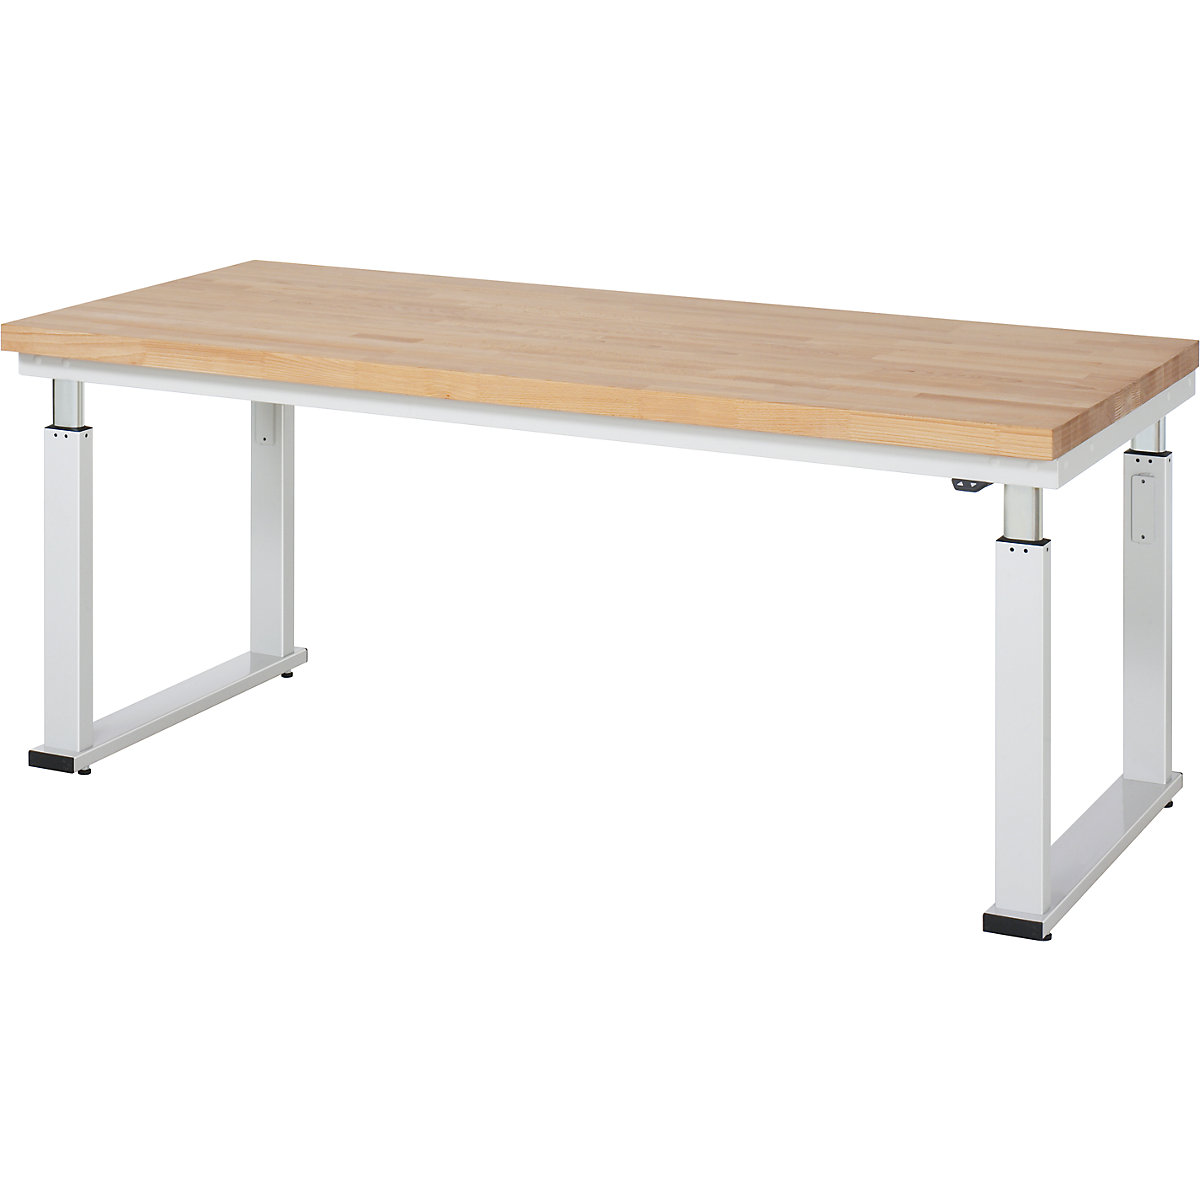 Psací stůl s elektrickým přestavováním výšky – RAU, bukový masiv, nosnost 600 kg, š x h 2000 x 900 mm-12